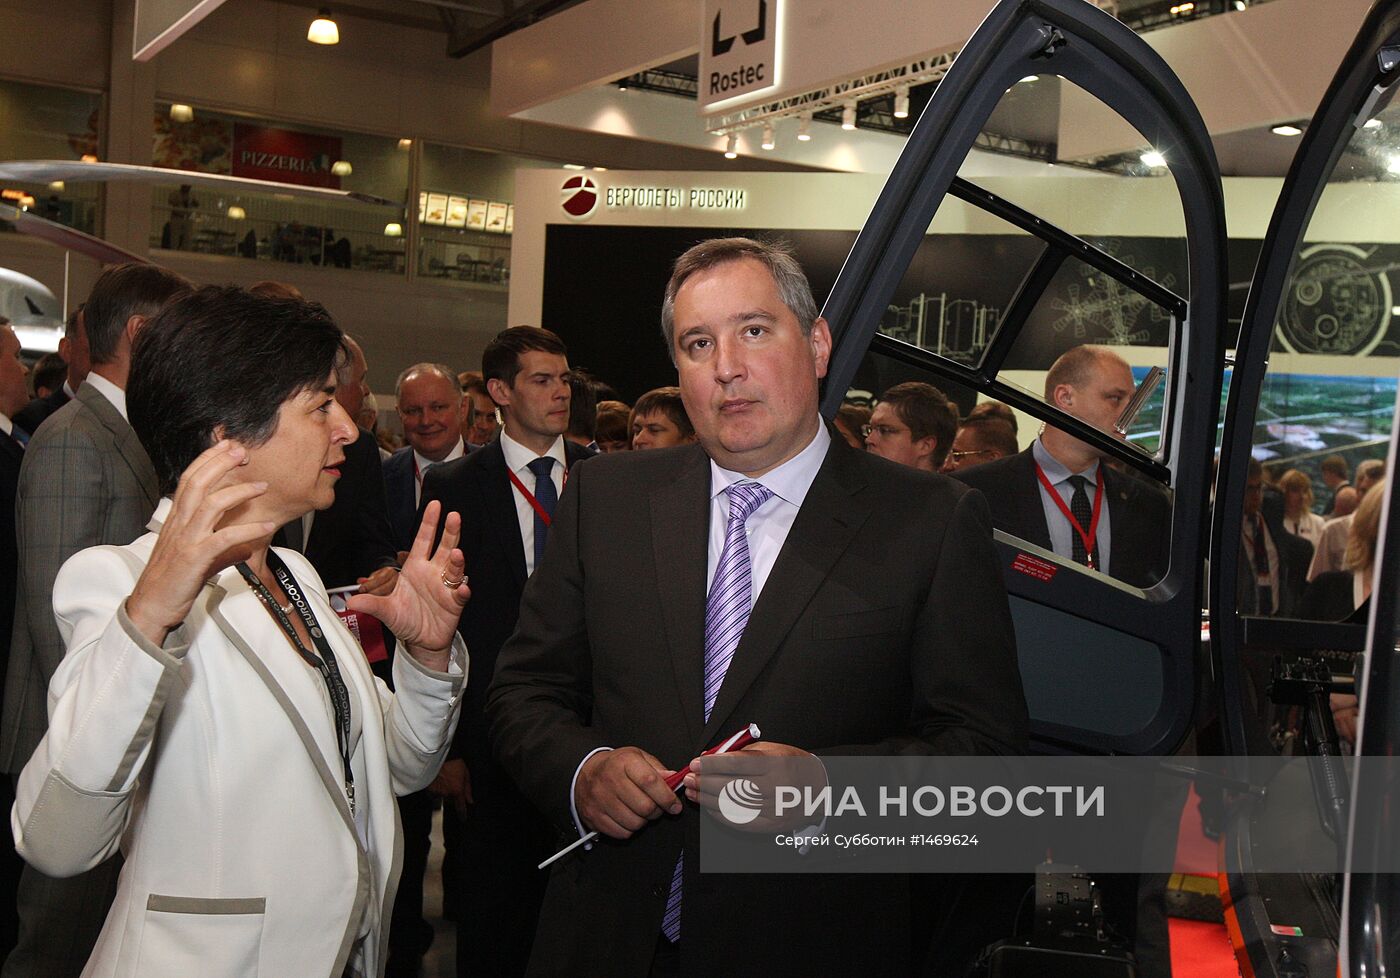 Выставка вертолетной индустрии HeliRussia 2013